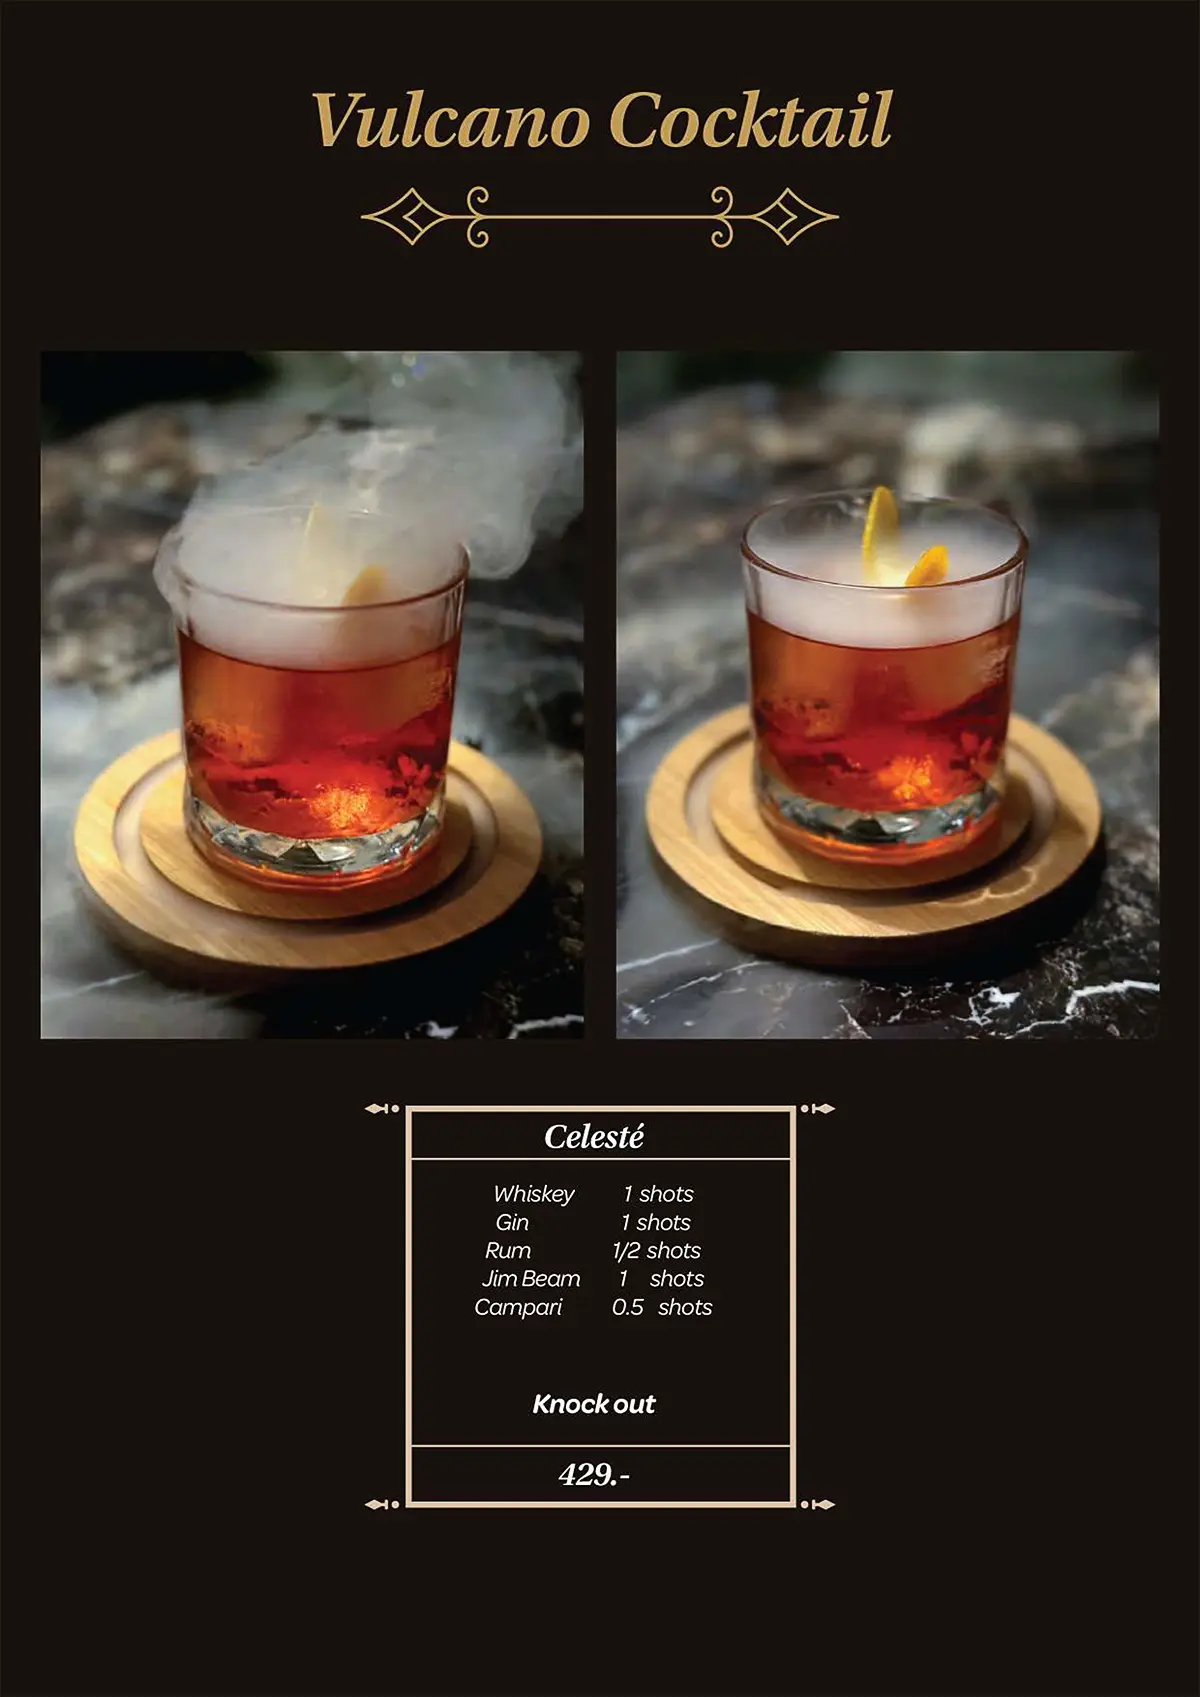 Culcano Cocktails - Celeste